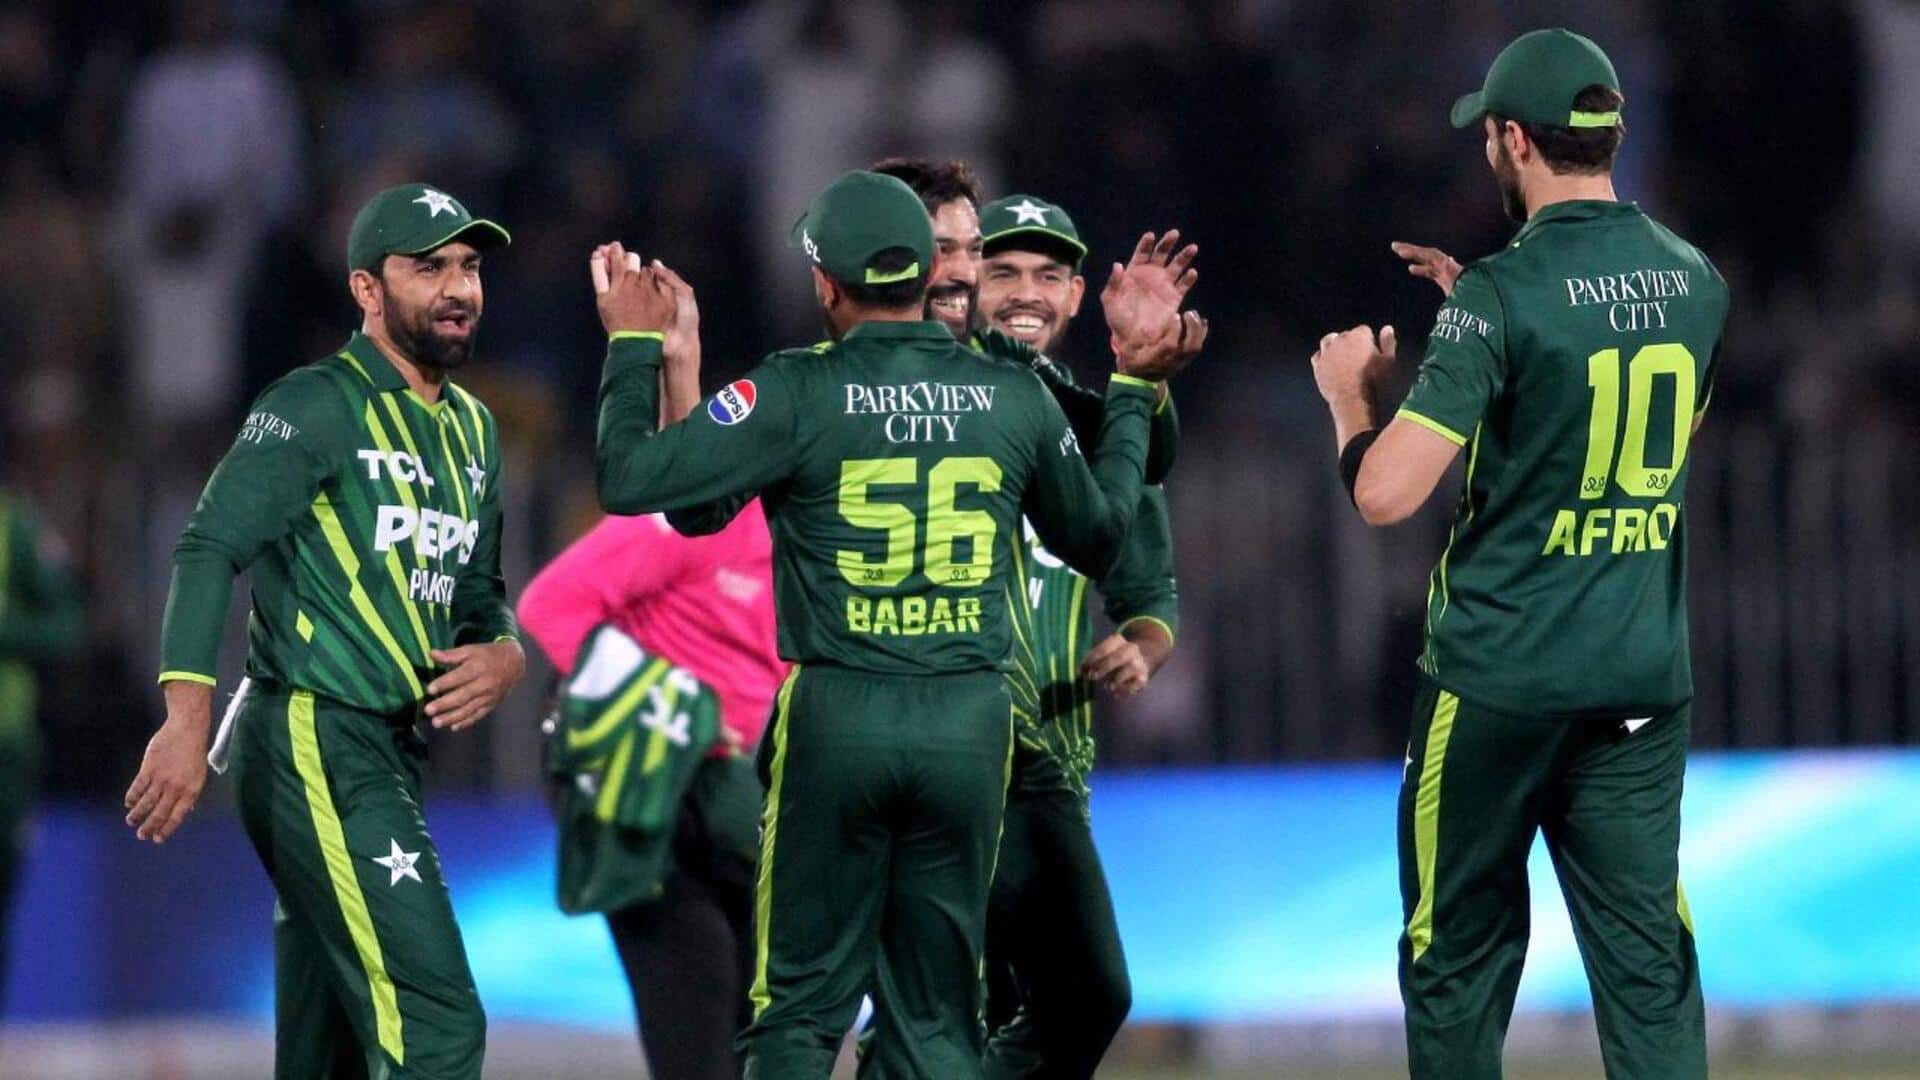 दूसरा टी-20: पाकिस्तान ने न्यूजीलैंड को 7 विकेट से हराया, सीरीज में बनाई 1-0 की बढ़त 